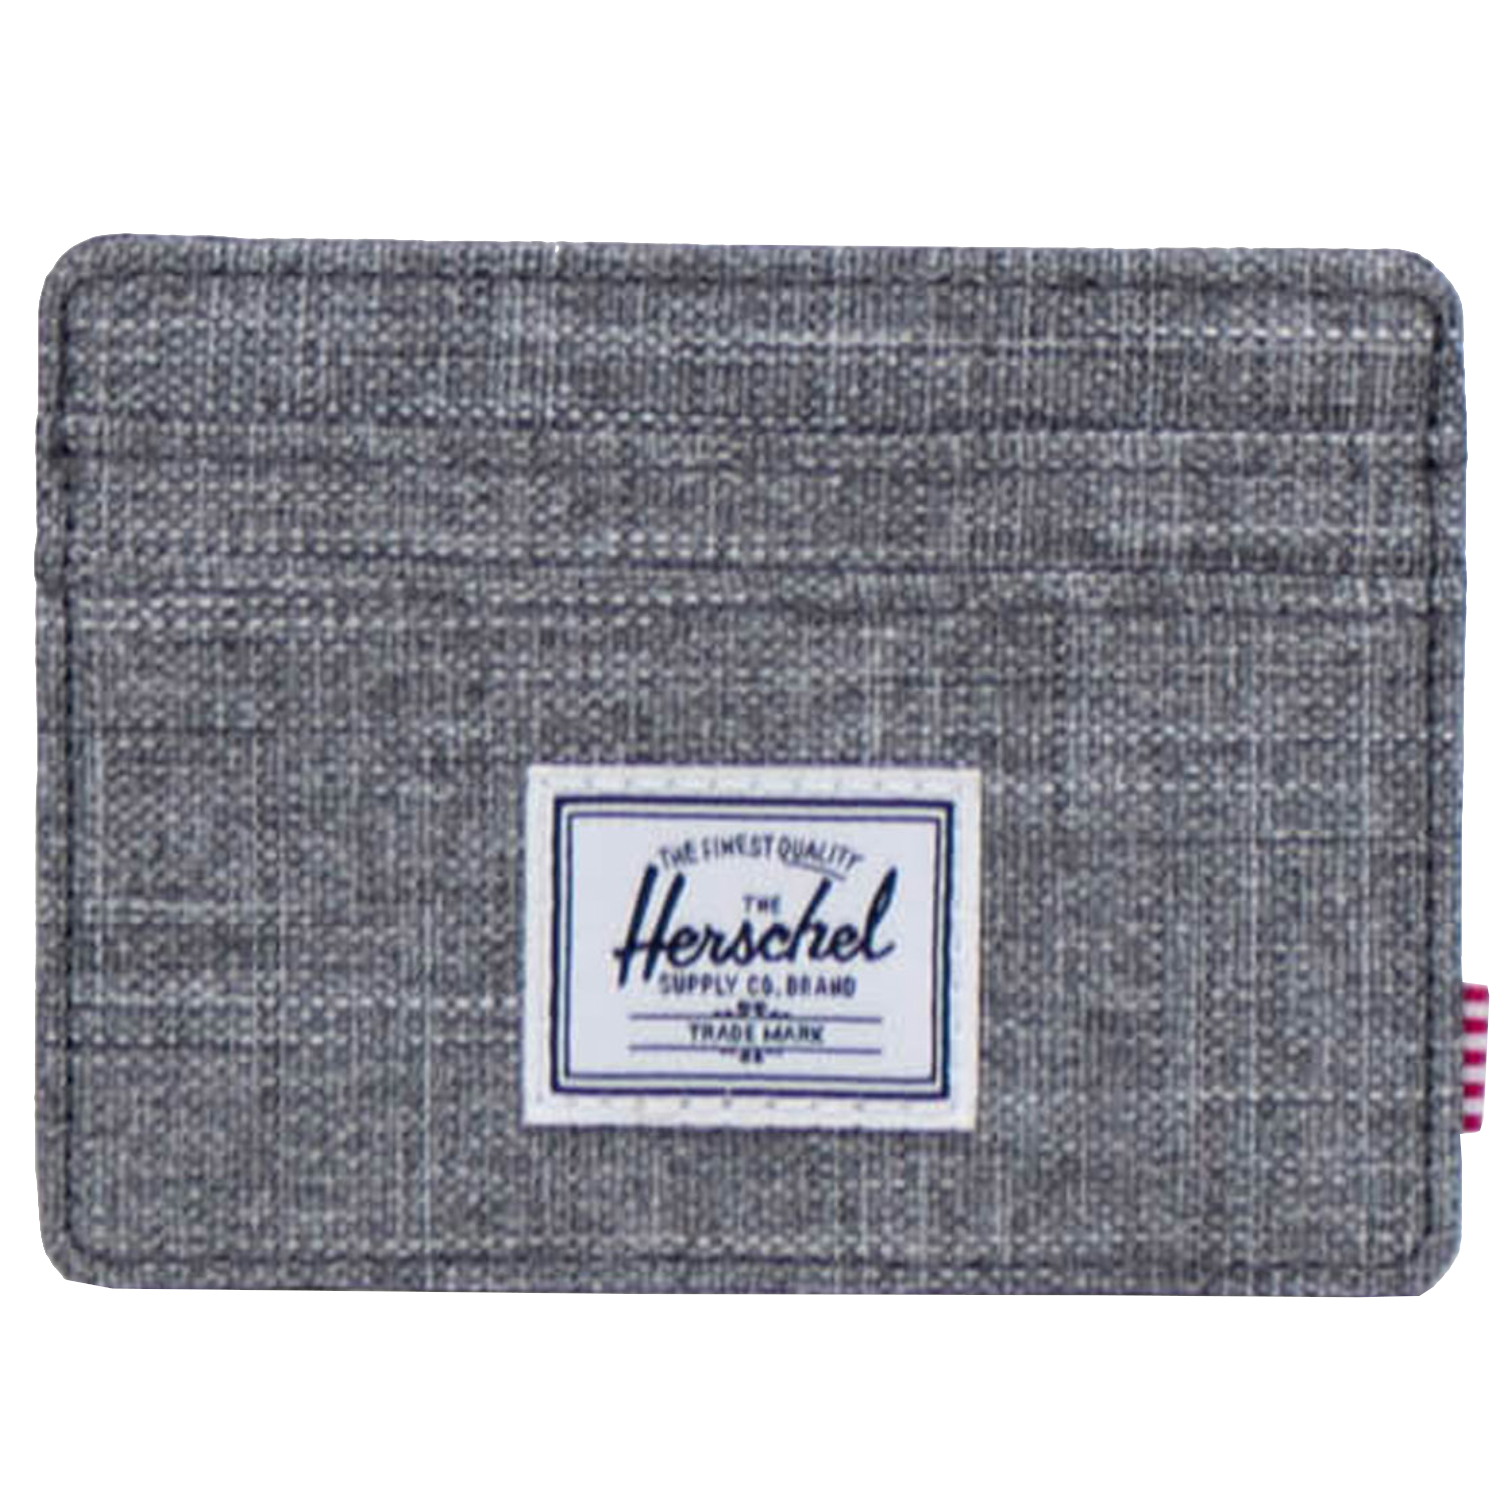 цена Кошелек Herschel Herschel Cardholder Wallet, серый